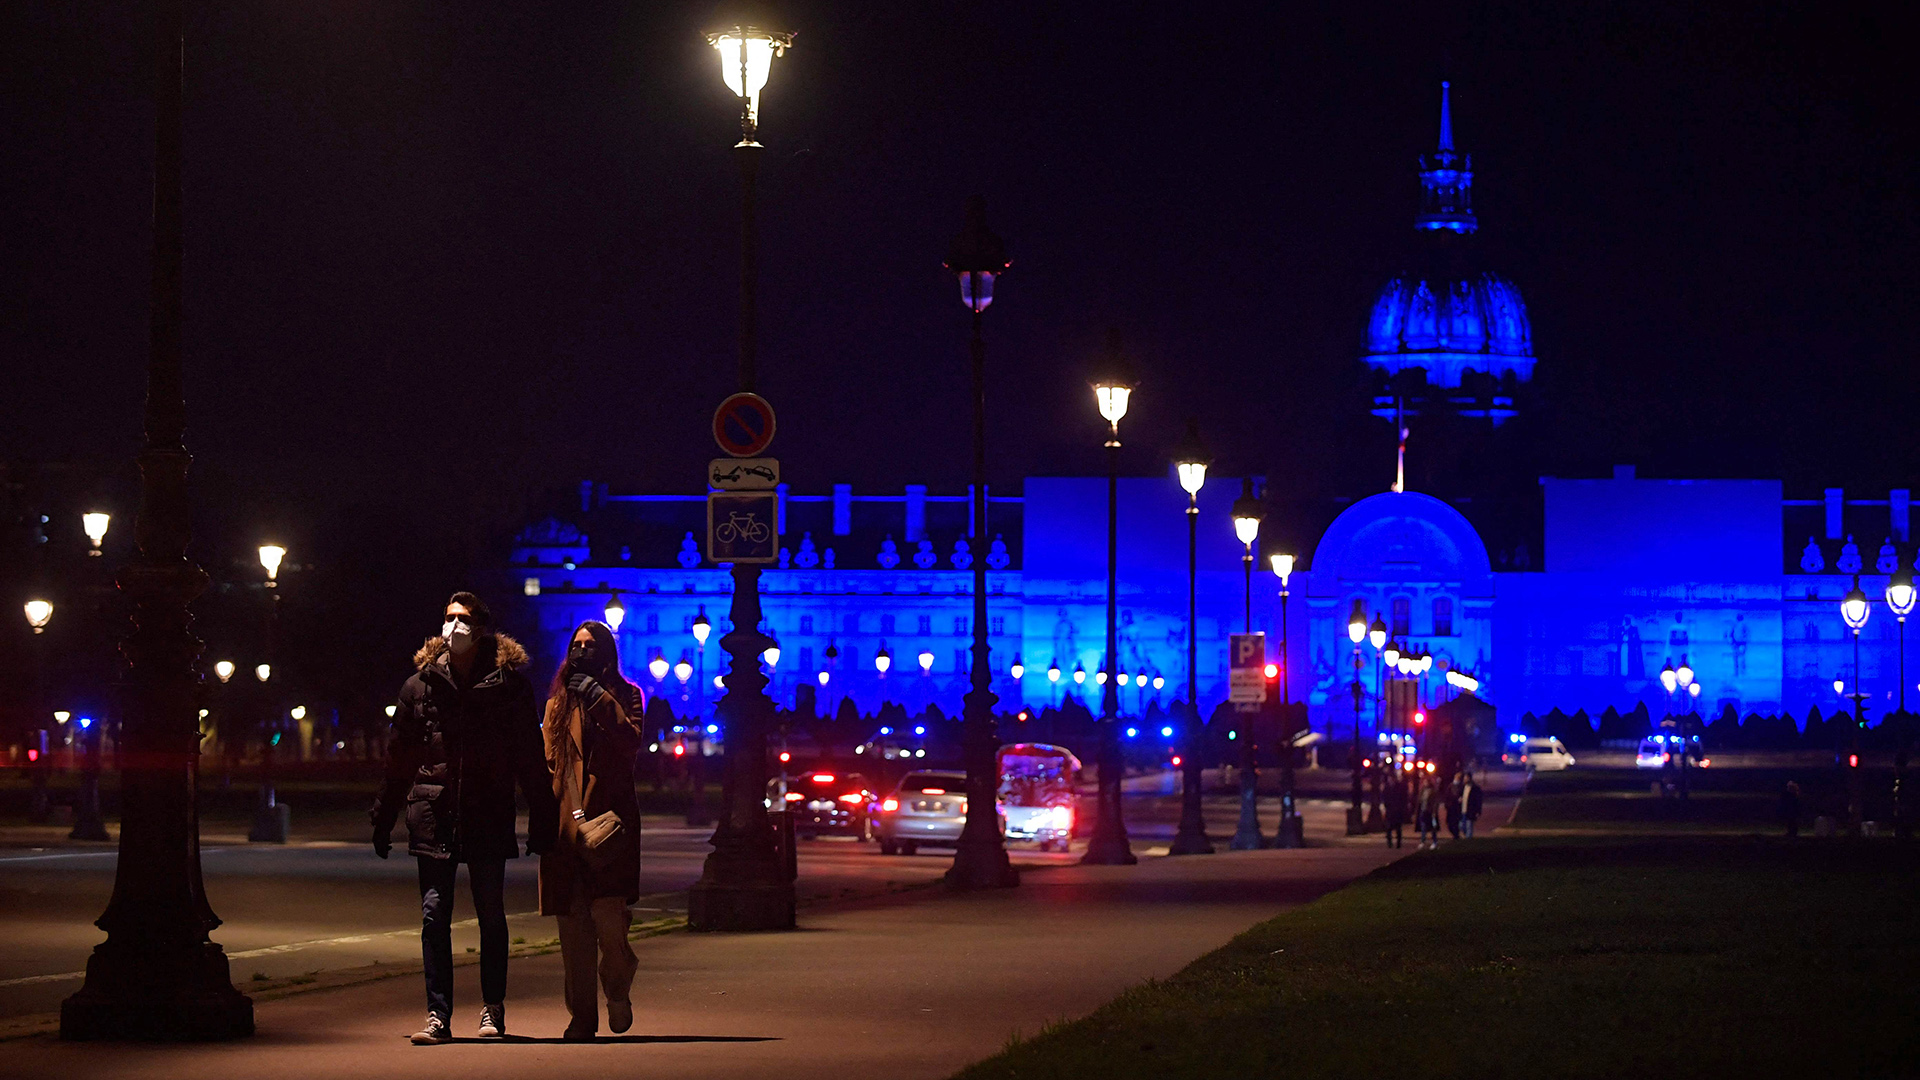  Ein Paar geht vor dem "Hotel des Invalides" spazieren, das anlässlich der französischen EU-Ratspräsidentschaft in blauem Licht erstrahlt, Paris. | AFP